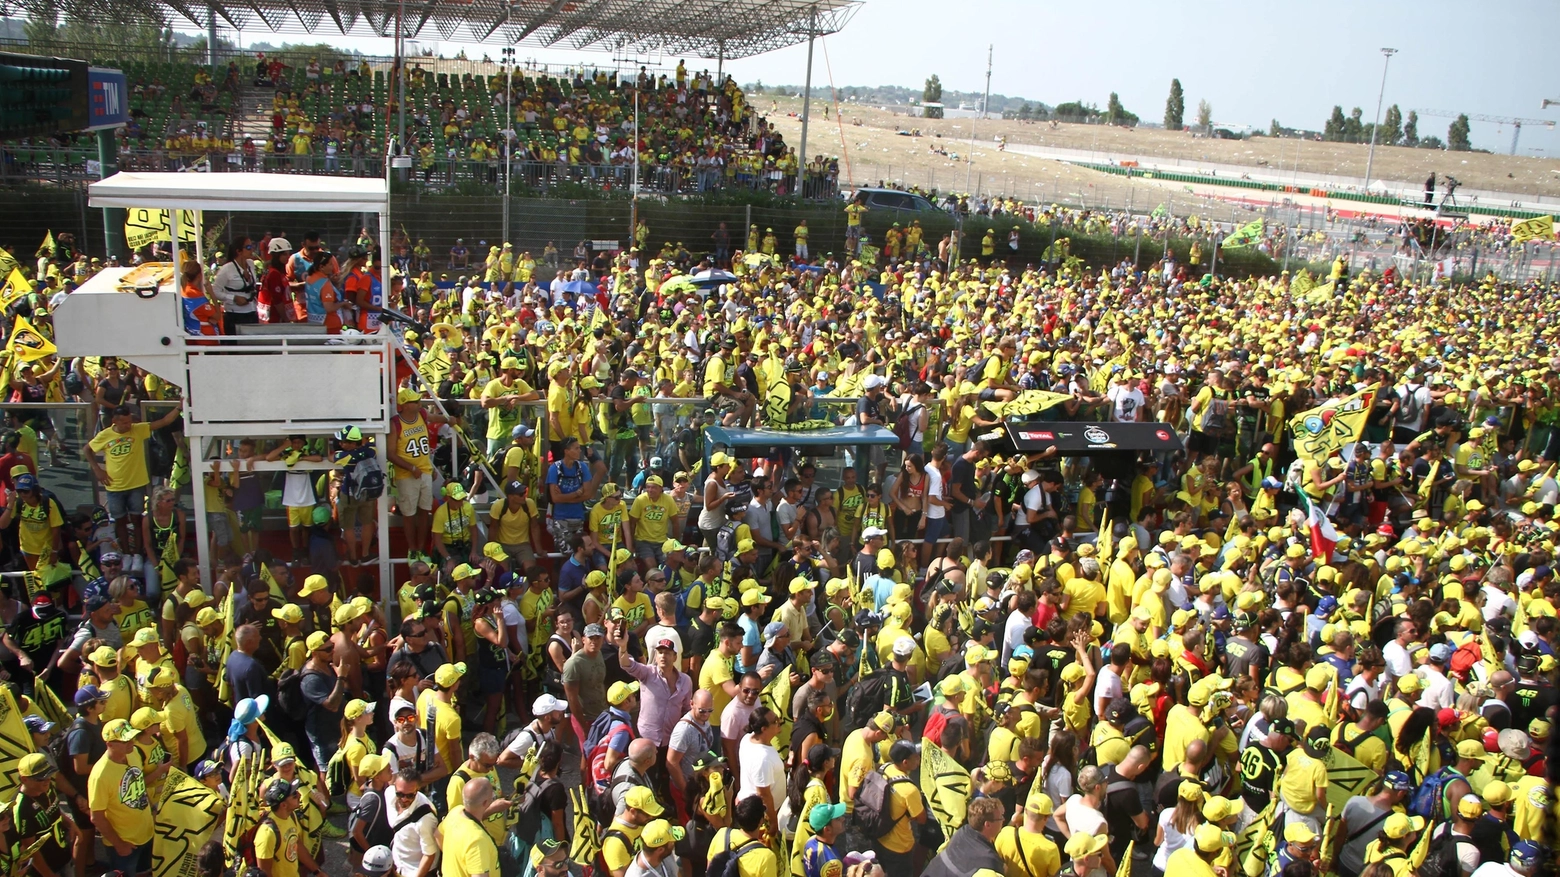 La folla al MotoGp di Misano in una delle passate edizioni